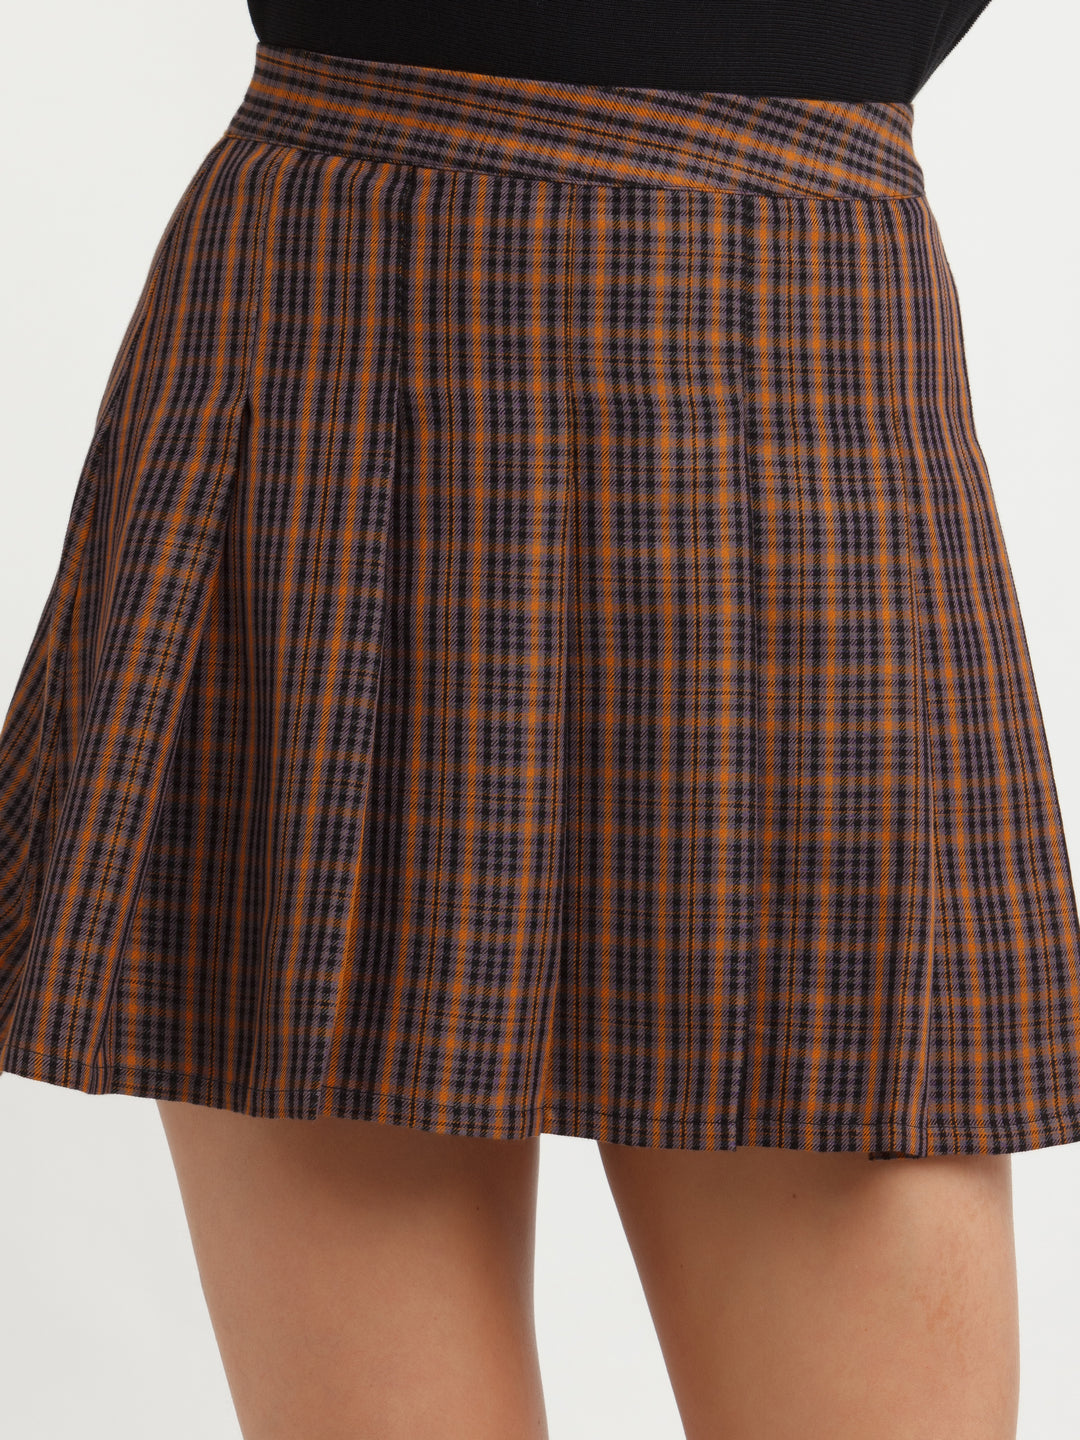 Multi Color Checked Skirt For Women